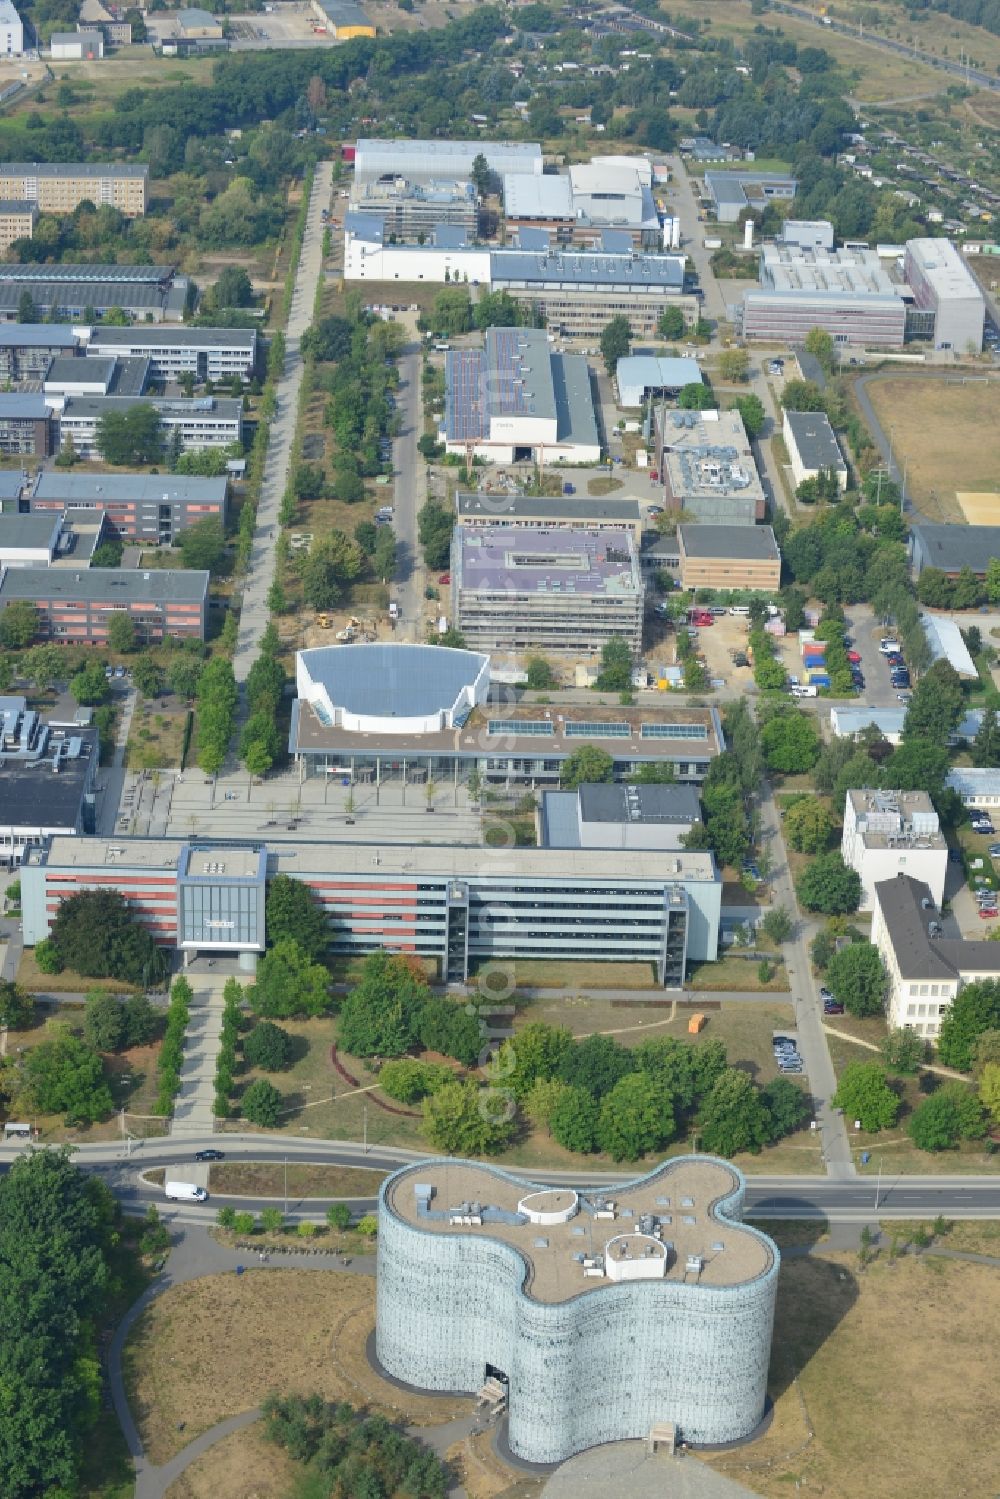 Aerial image Cottbus - View of campus of Brandenburgian Technical University Cottbus in Brandenburg